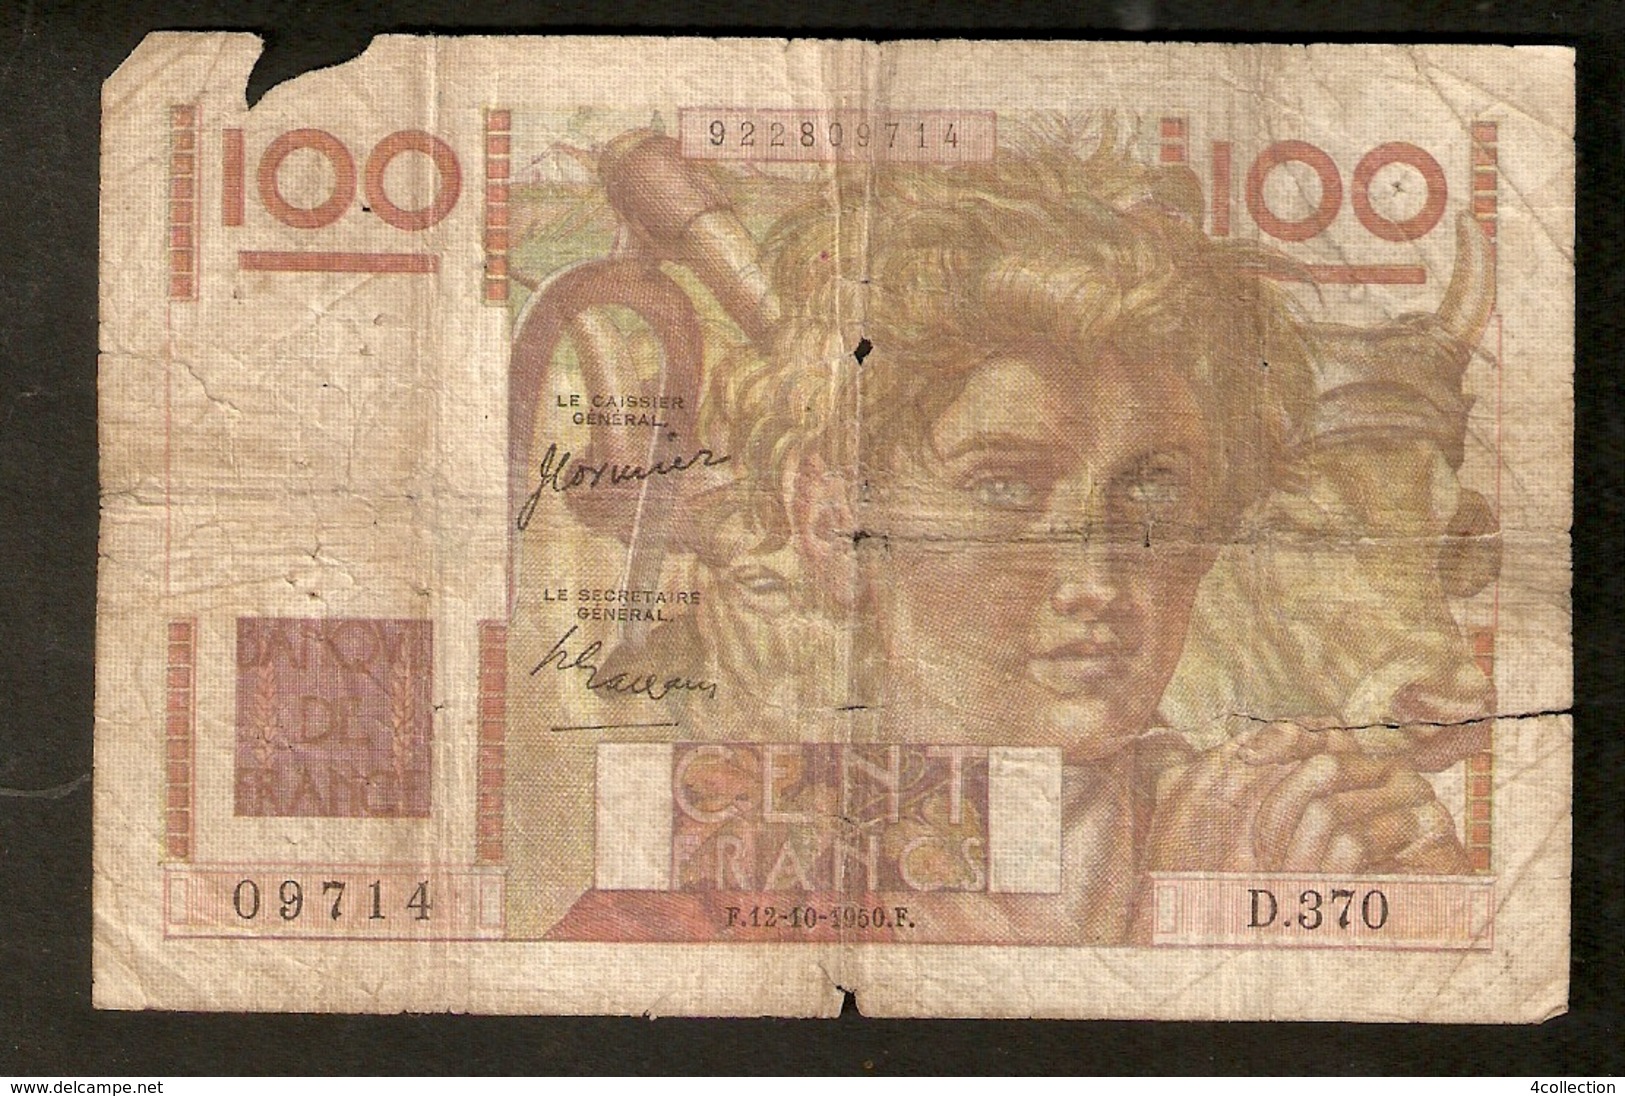 T. France 100 F Cent Francs F.12-10 1950.F. # 09714 D.370 J. Cormier And P. Gargam - 100 F 1945-1954 ''Jeune Paysan''